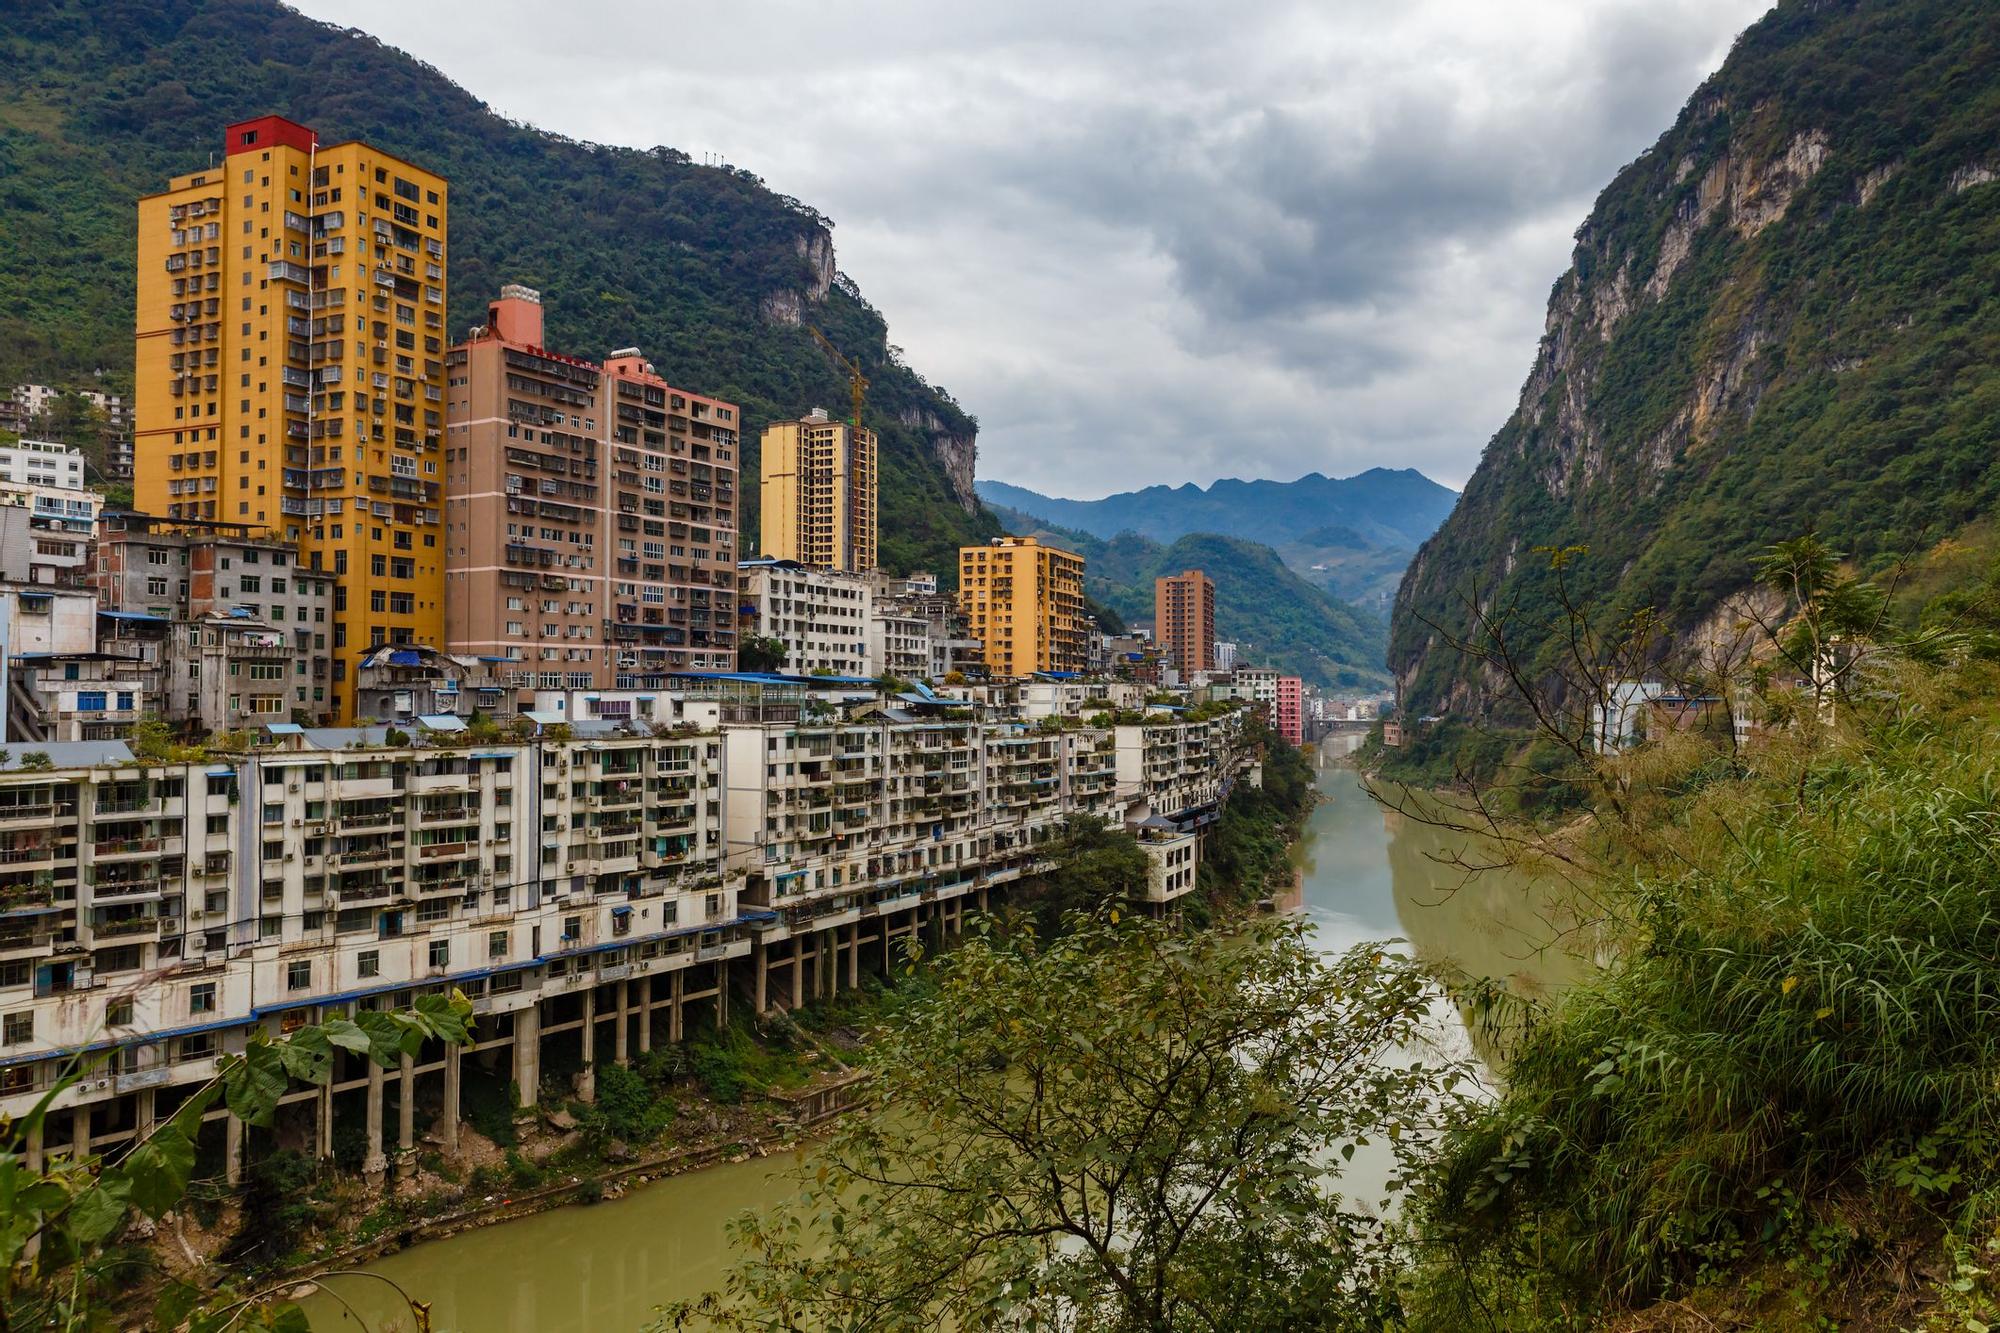 La ciudad más estrecha del mundo está dividida por un río central y rodeada de montañas